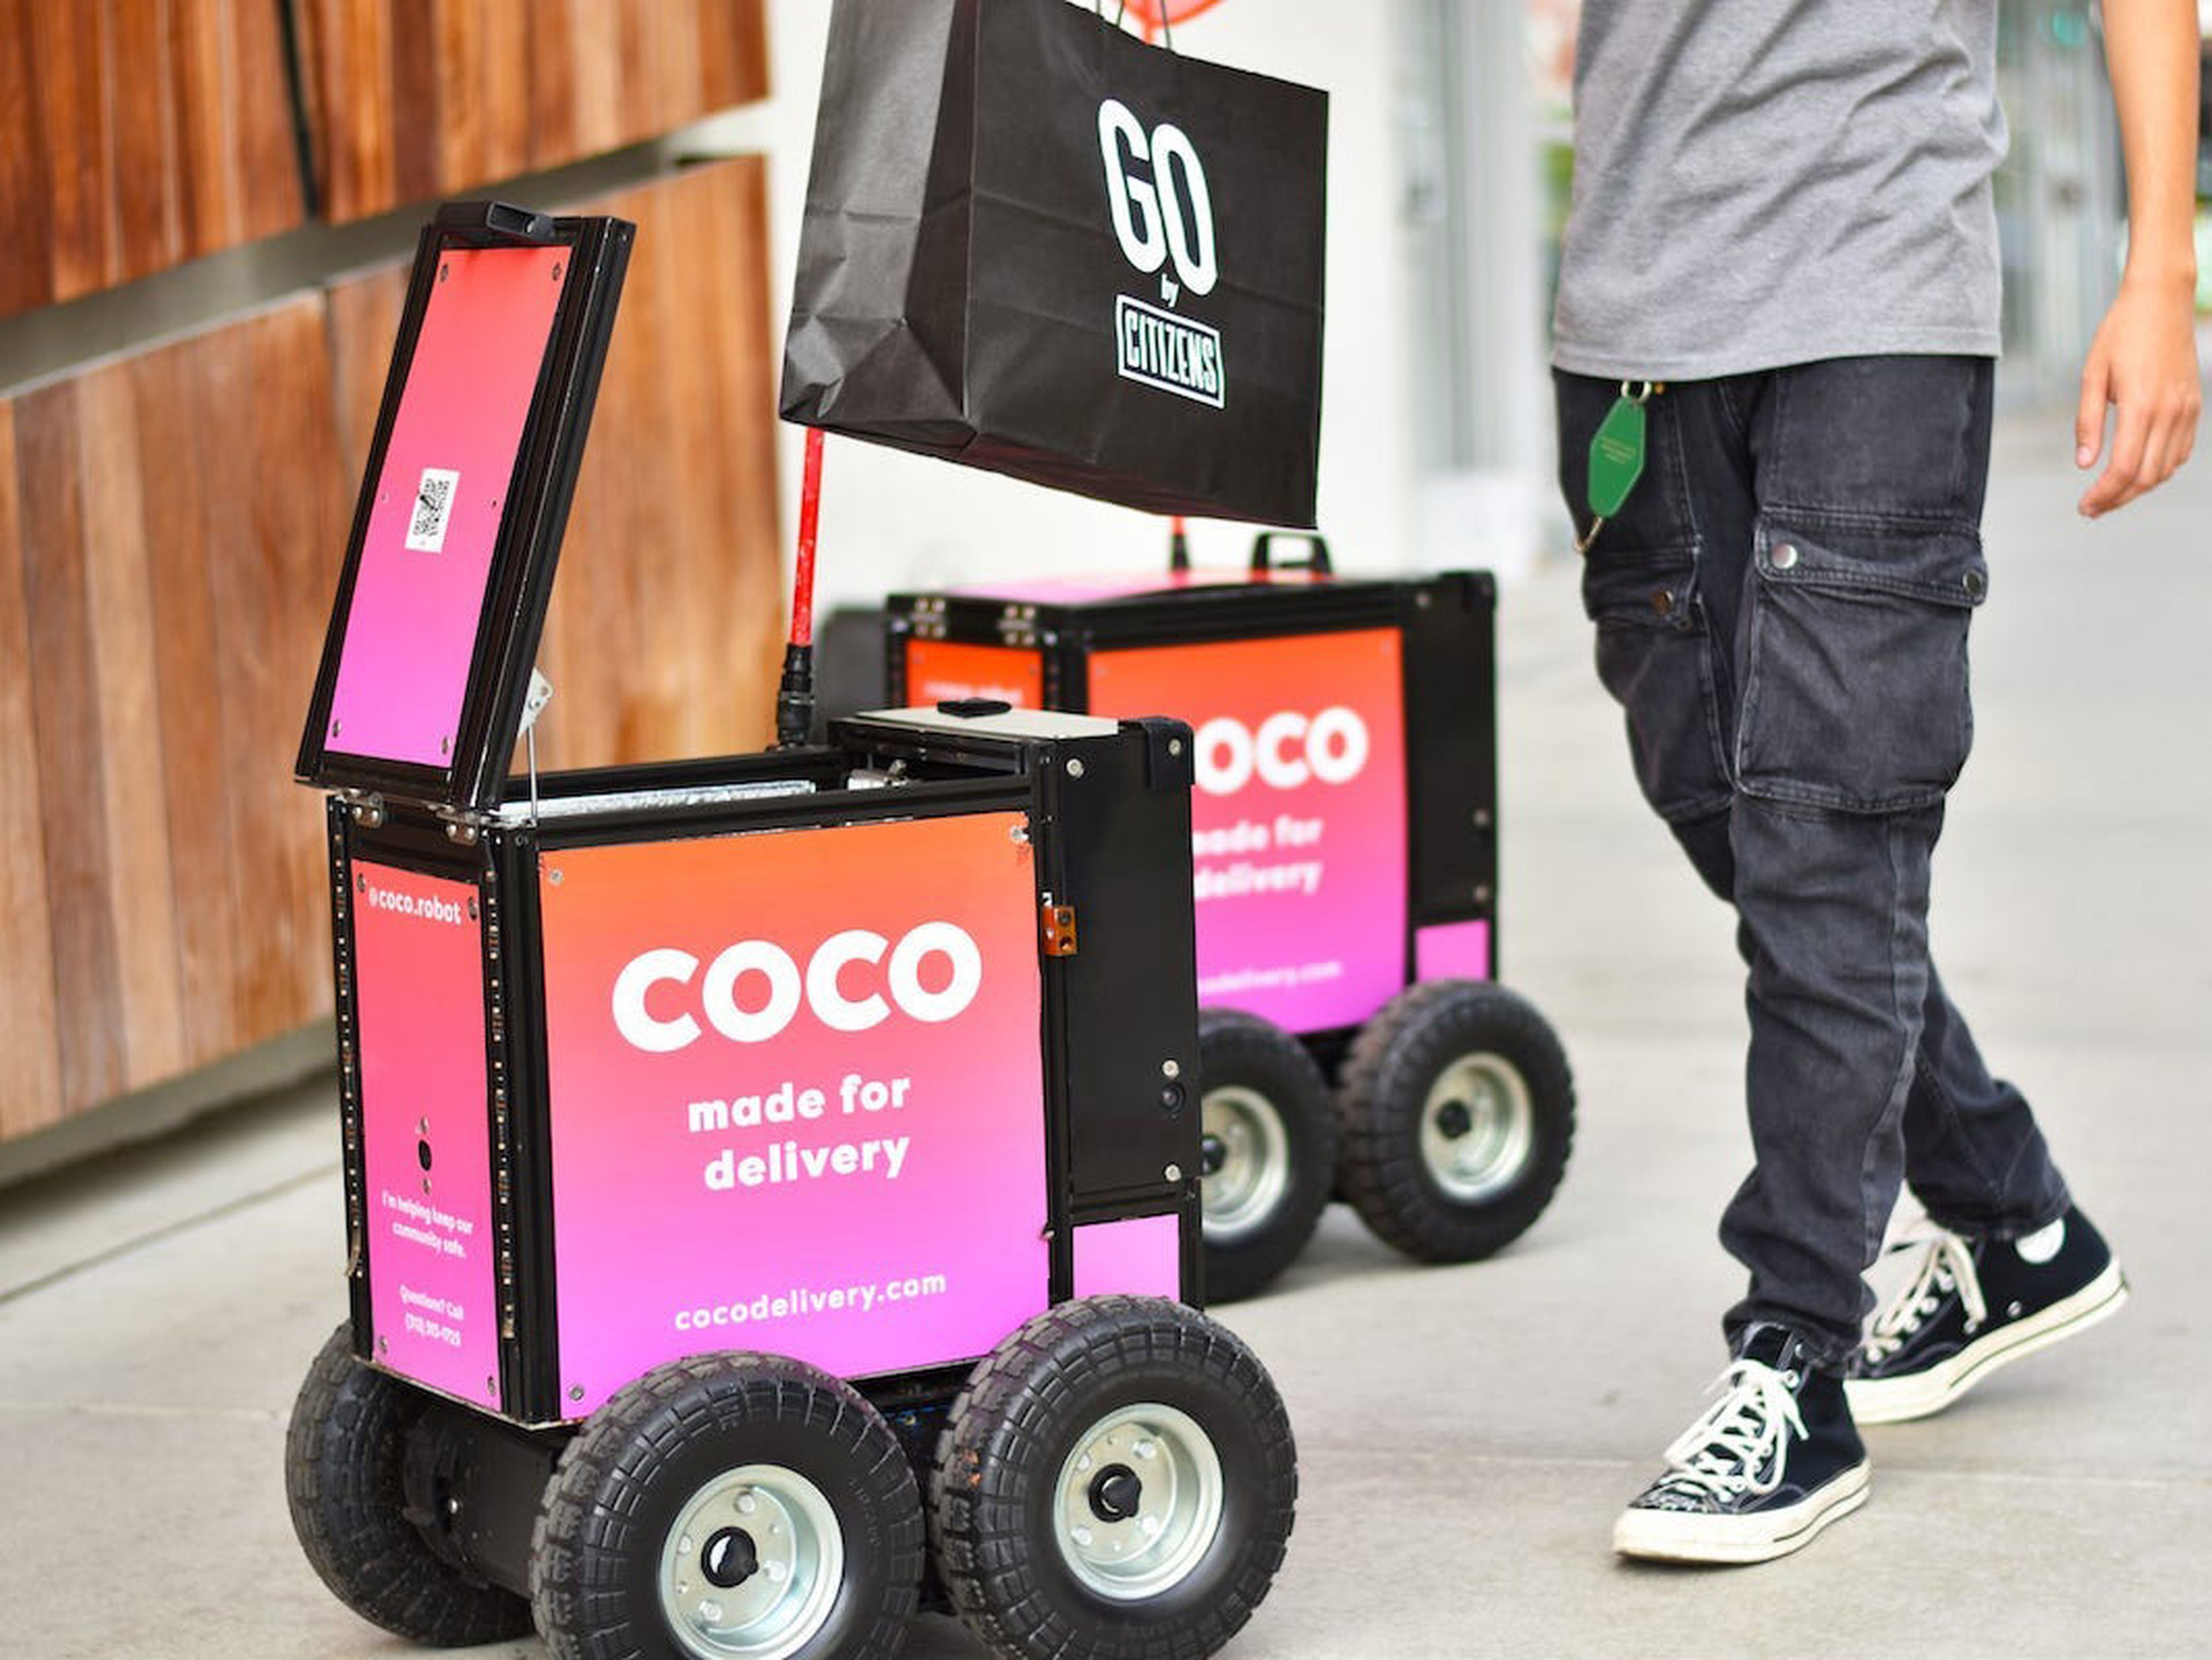 DoorDash se dispone a competir con Coco, una startup de entrega de última milla que utiliza robots en Los Ángeles.